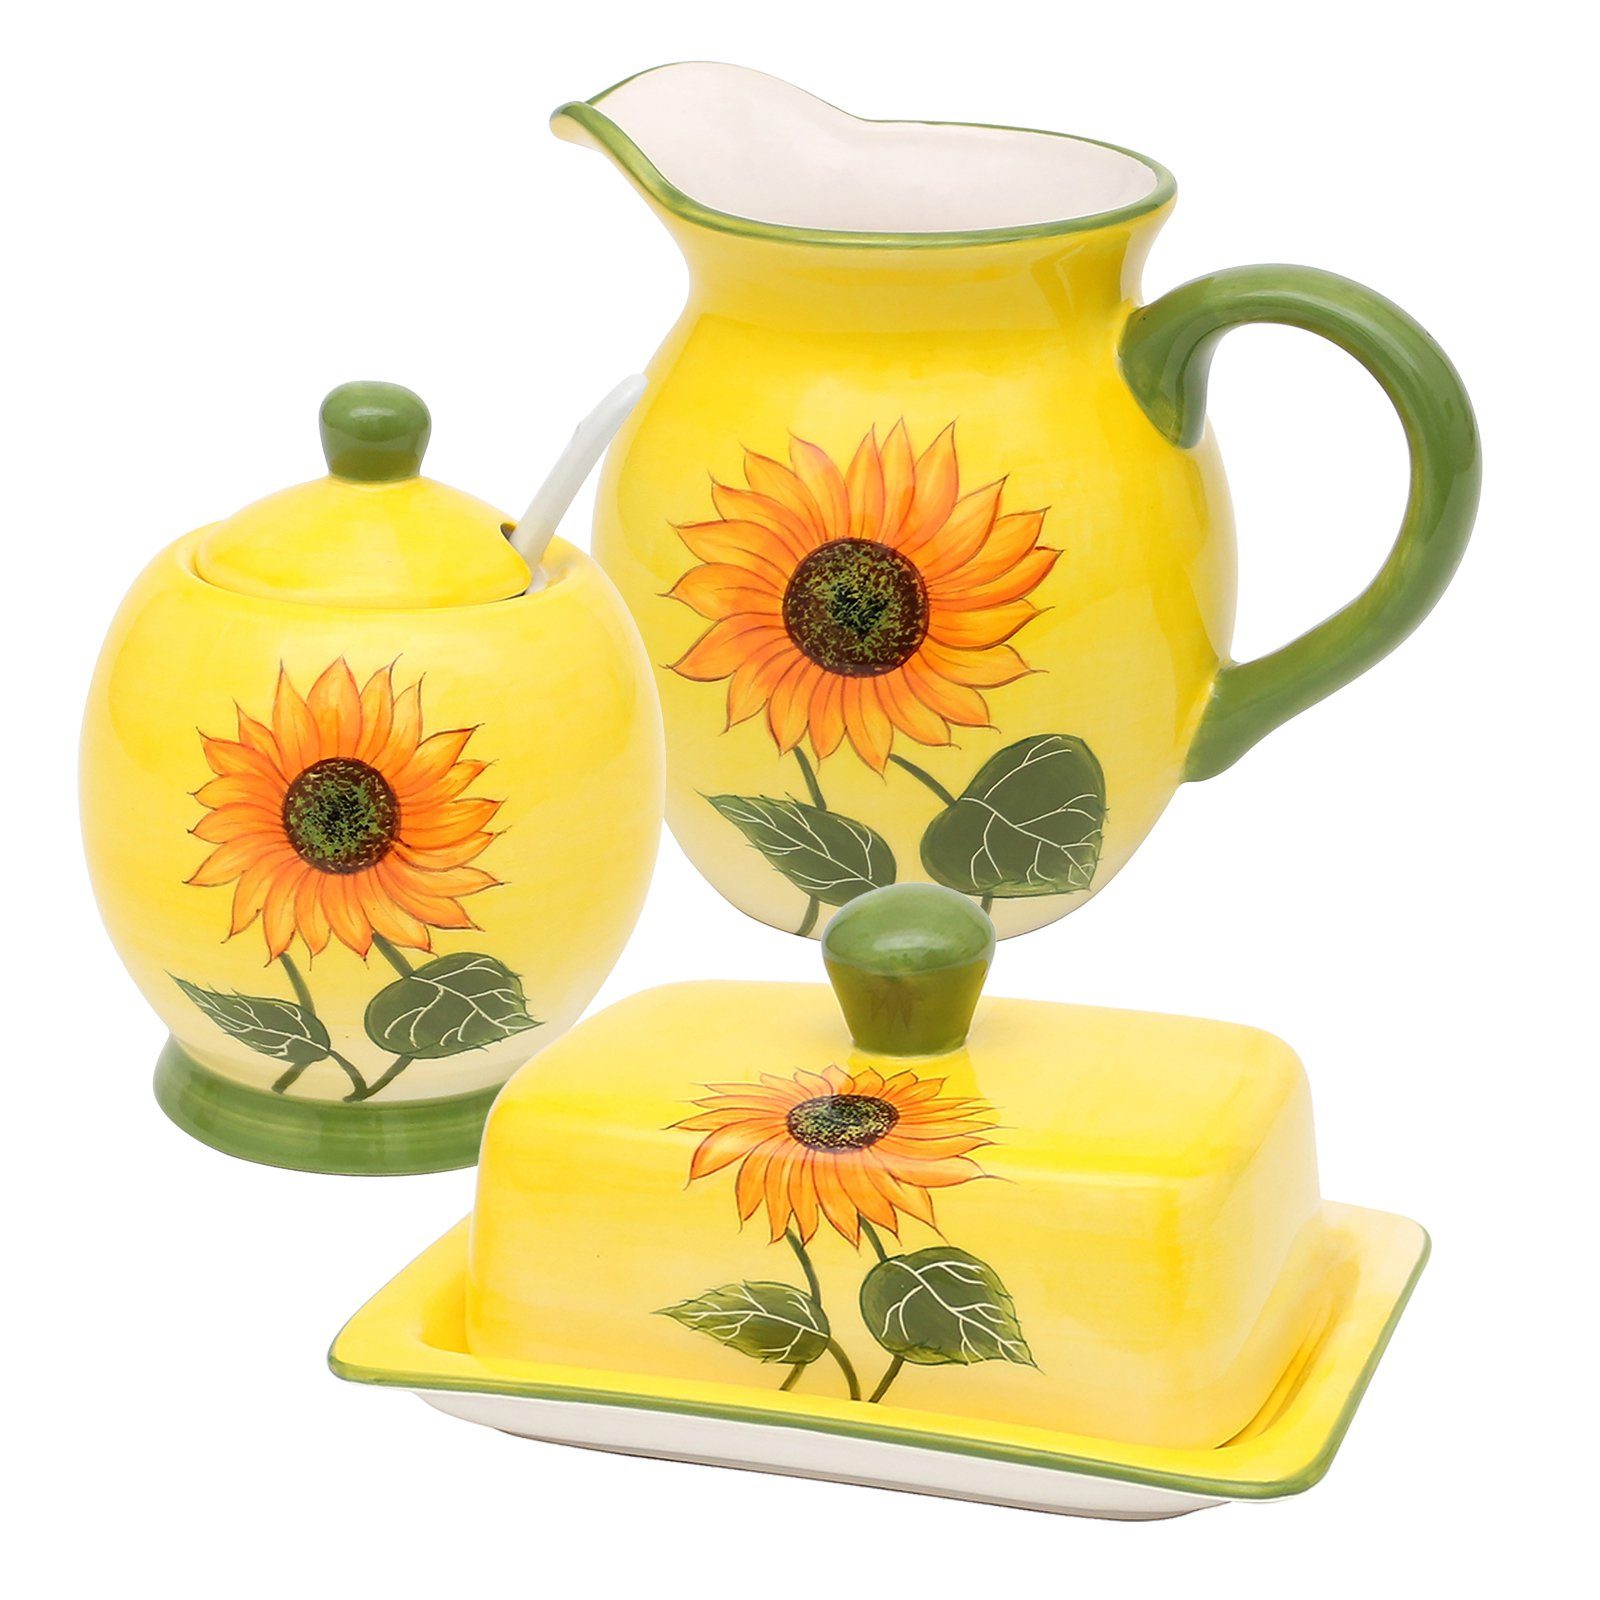 Neuetischkultur Frühstücks-Geschirrset Keramik-Set 3-teilig Sonnenblume (3-tlg), Keramik, Frühstücksset Butterdose Sahnekännchen Zuckerdose